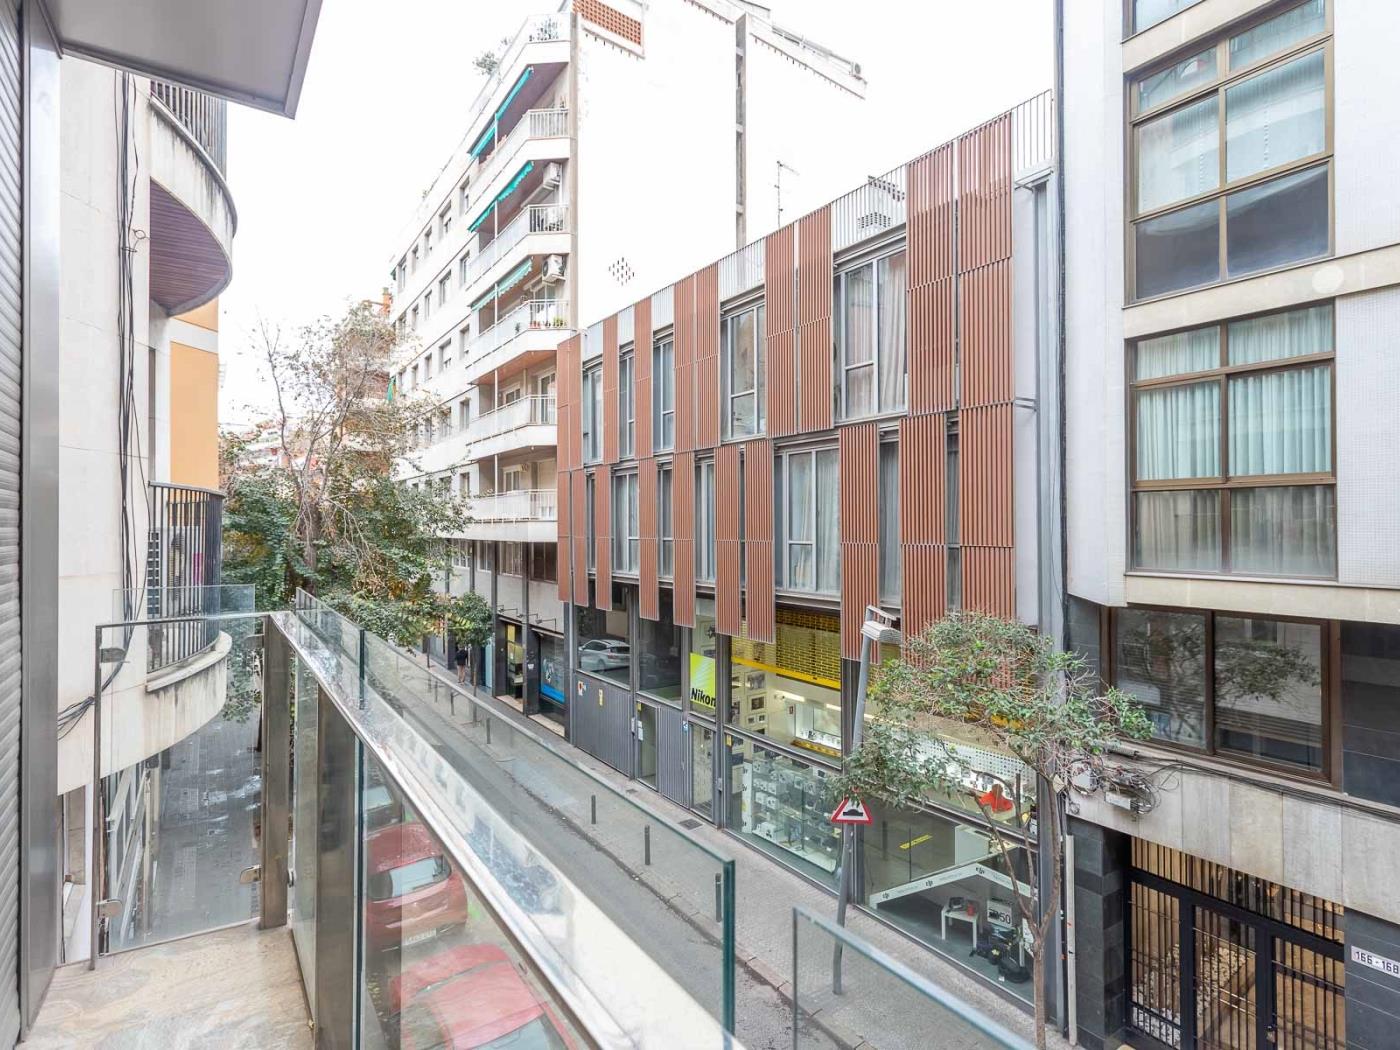 Grazioso appartamento a Sant Gervasi in affitto mensile - My Space Barcelona Appartamenti